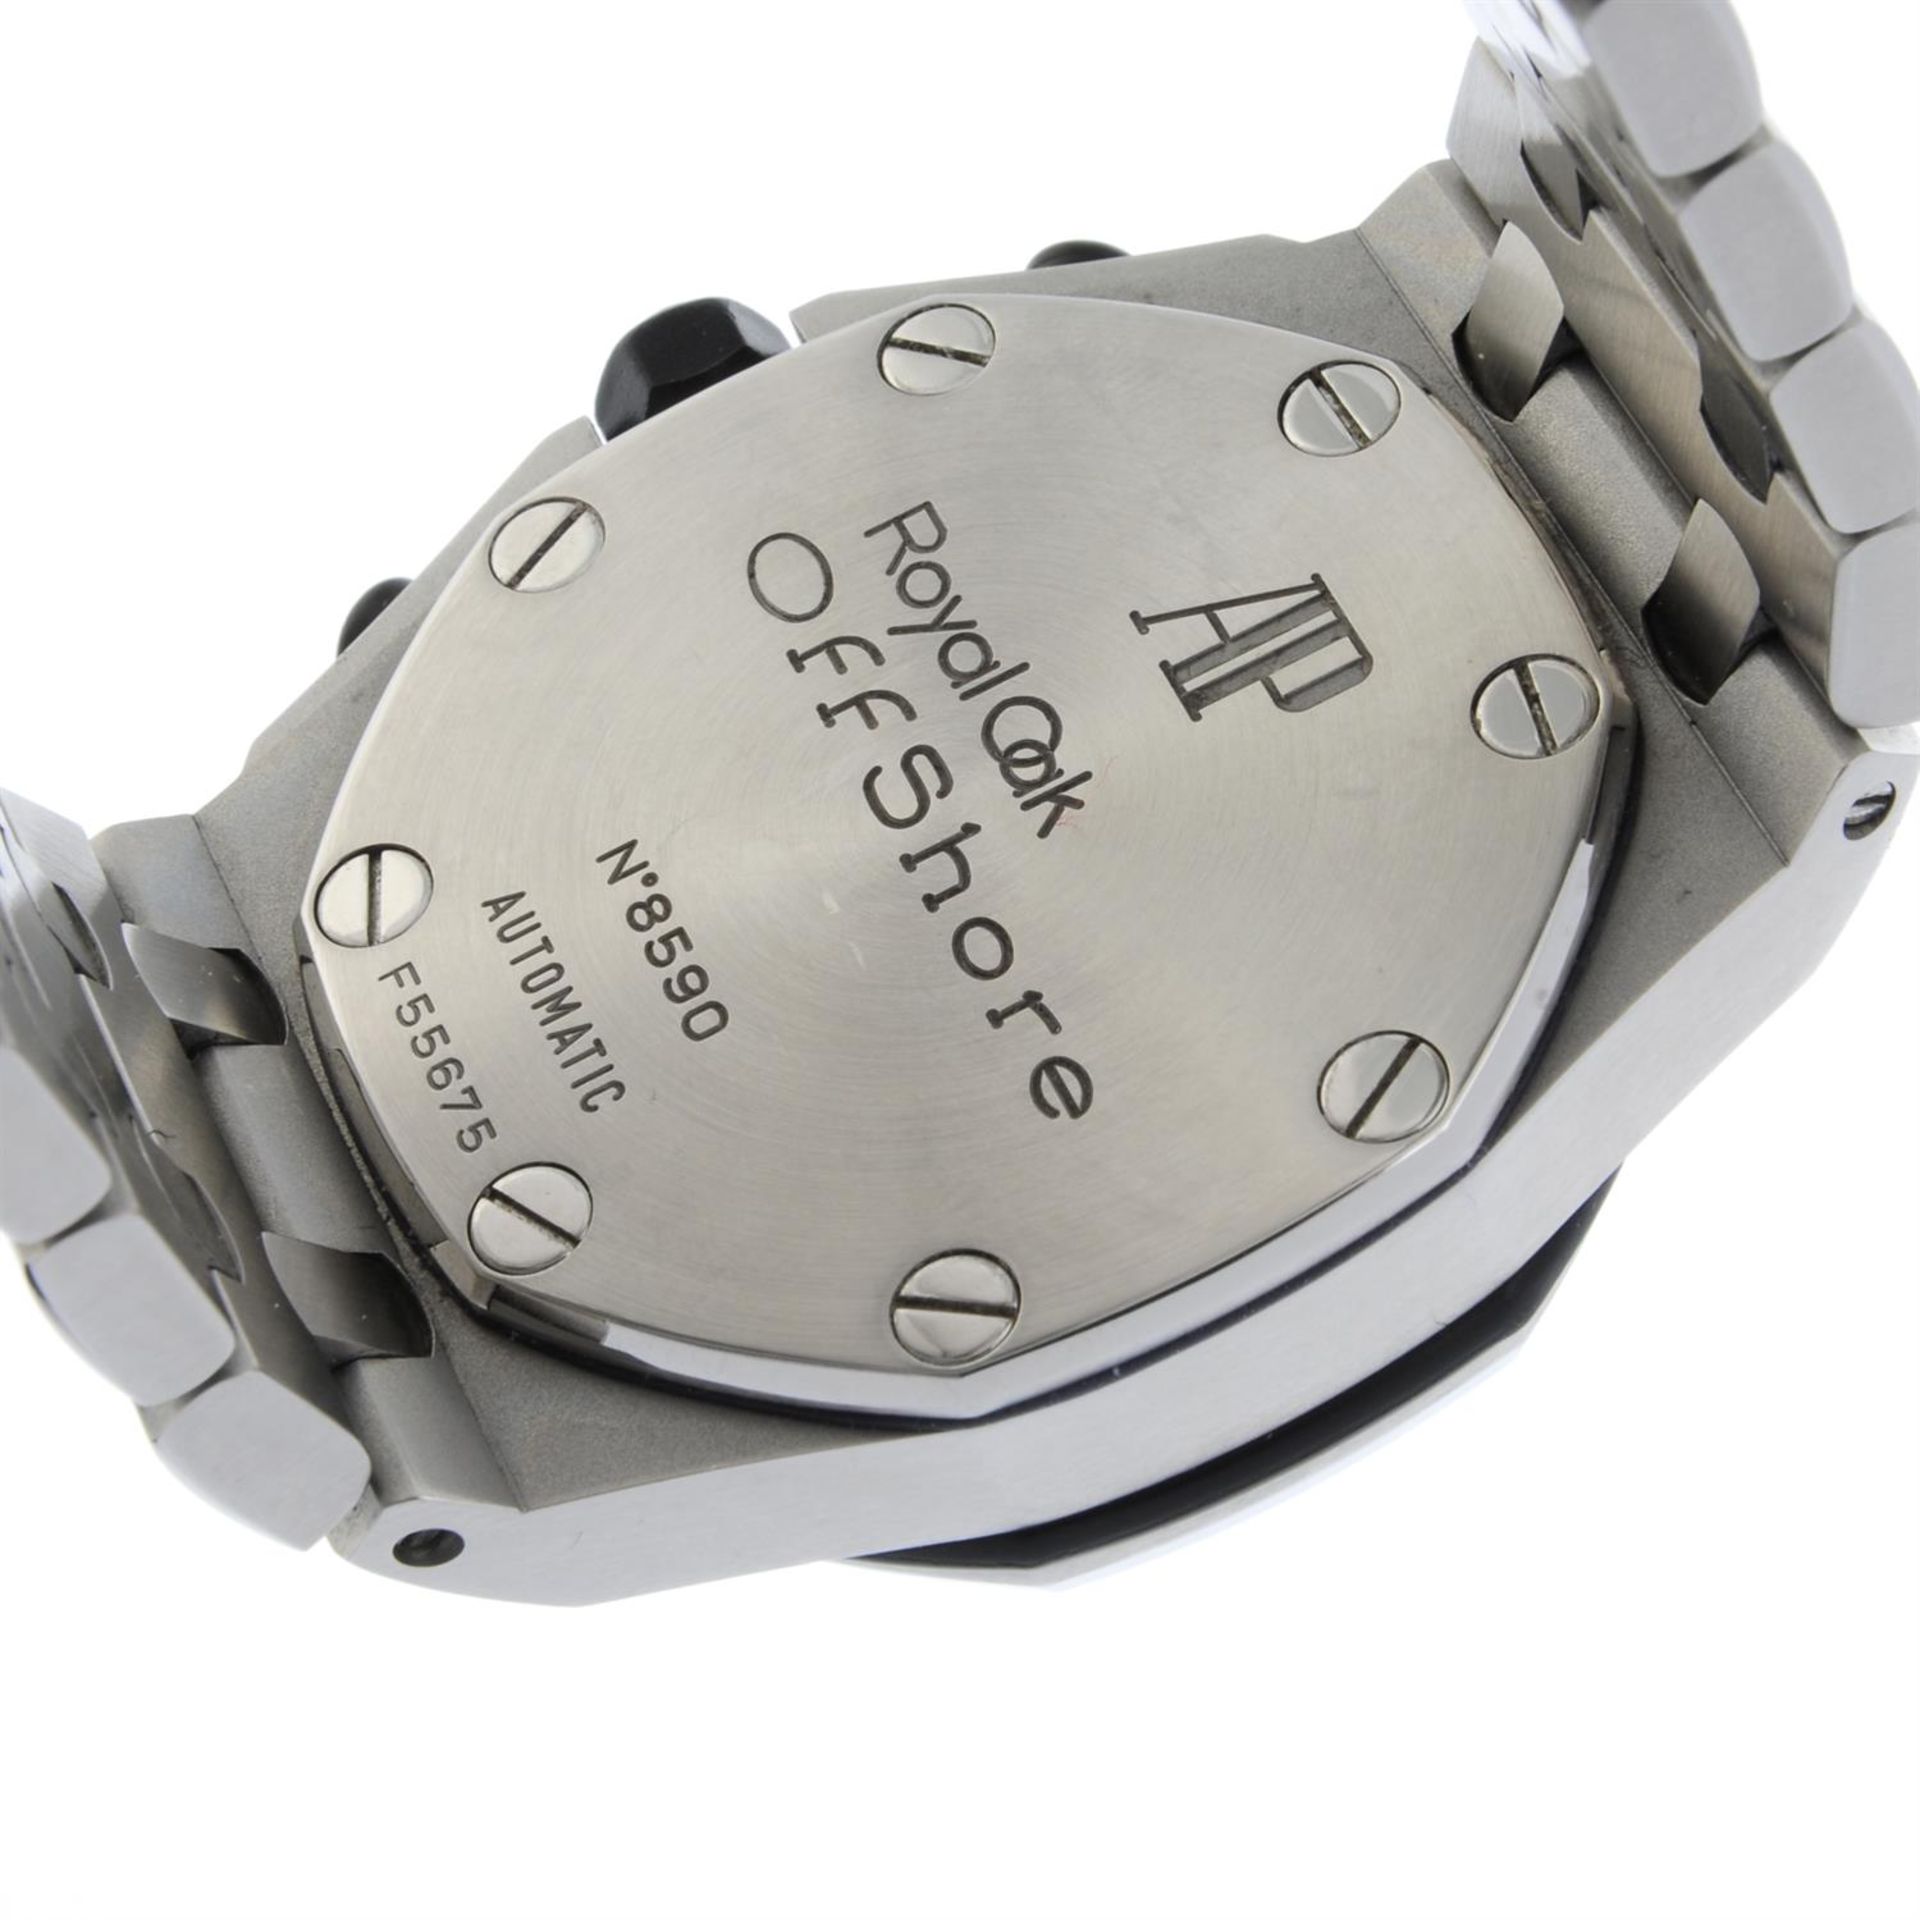 AUDEMARS PIGUET - stainless steel Royal Oak Offshore bracelet watch, 45mm. - Bild 5 aus 7